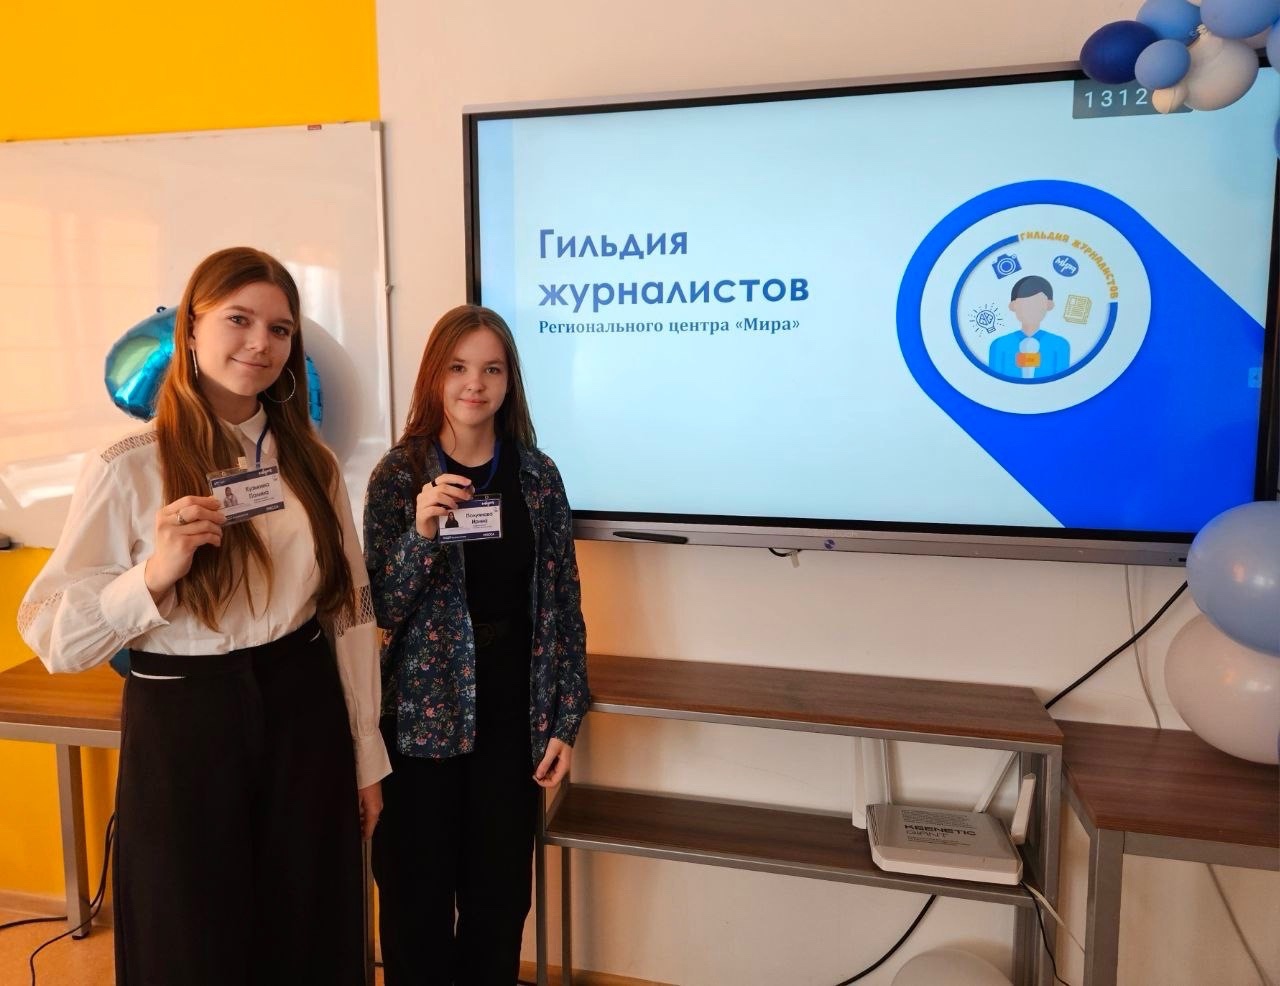 Полуянова Ирина, ученица 7Б класса и Кузькина Полина, ученица 10Л класса официально стали участниками Гильдии журналистов Регионального центра «Мира».